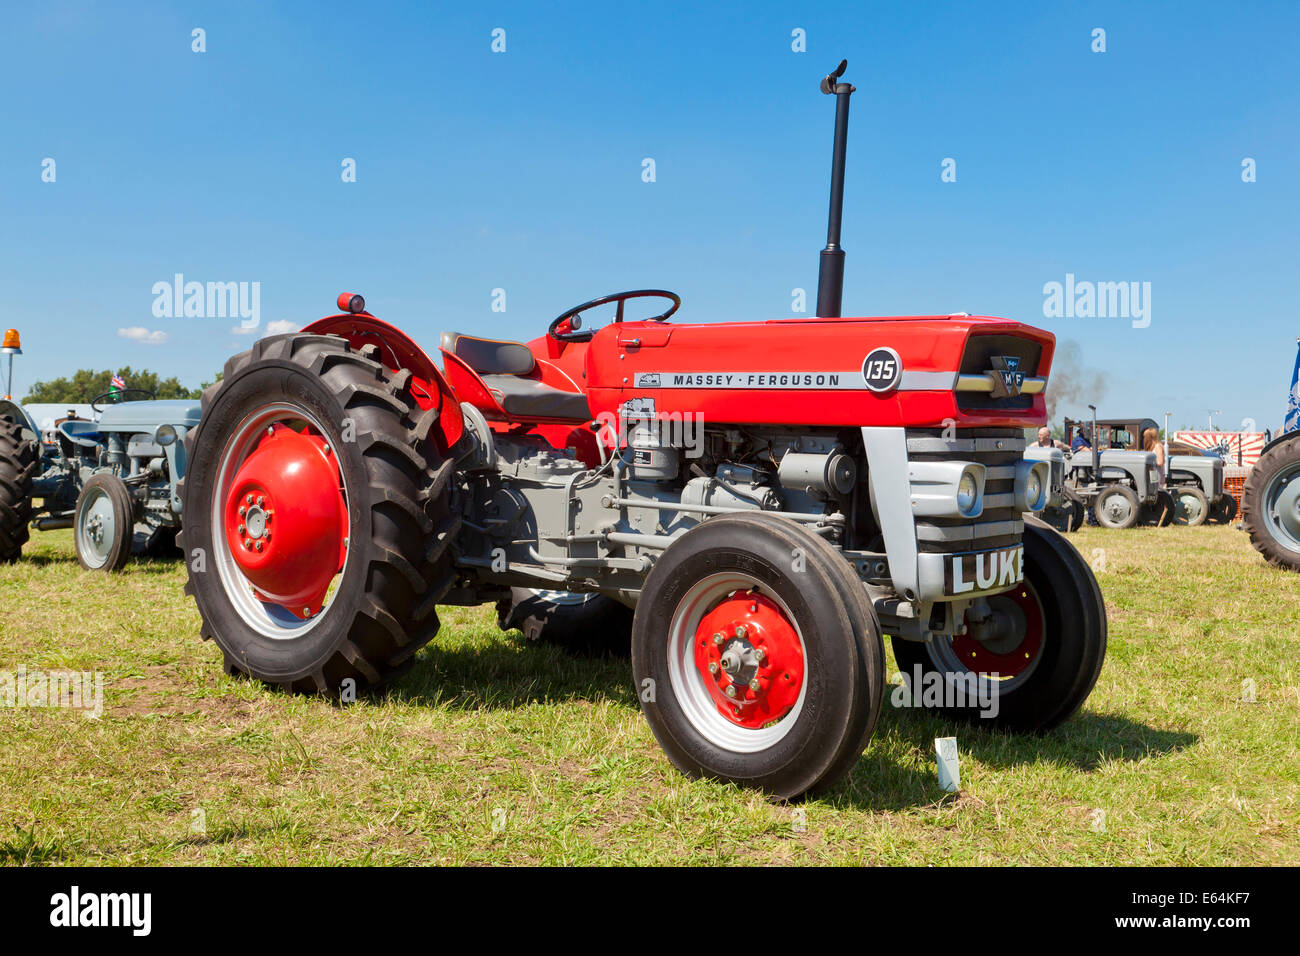 Massey Ferguson 135 Traktor auf einer landwirtschaftlichen Ausstellung Stockfoto